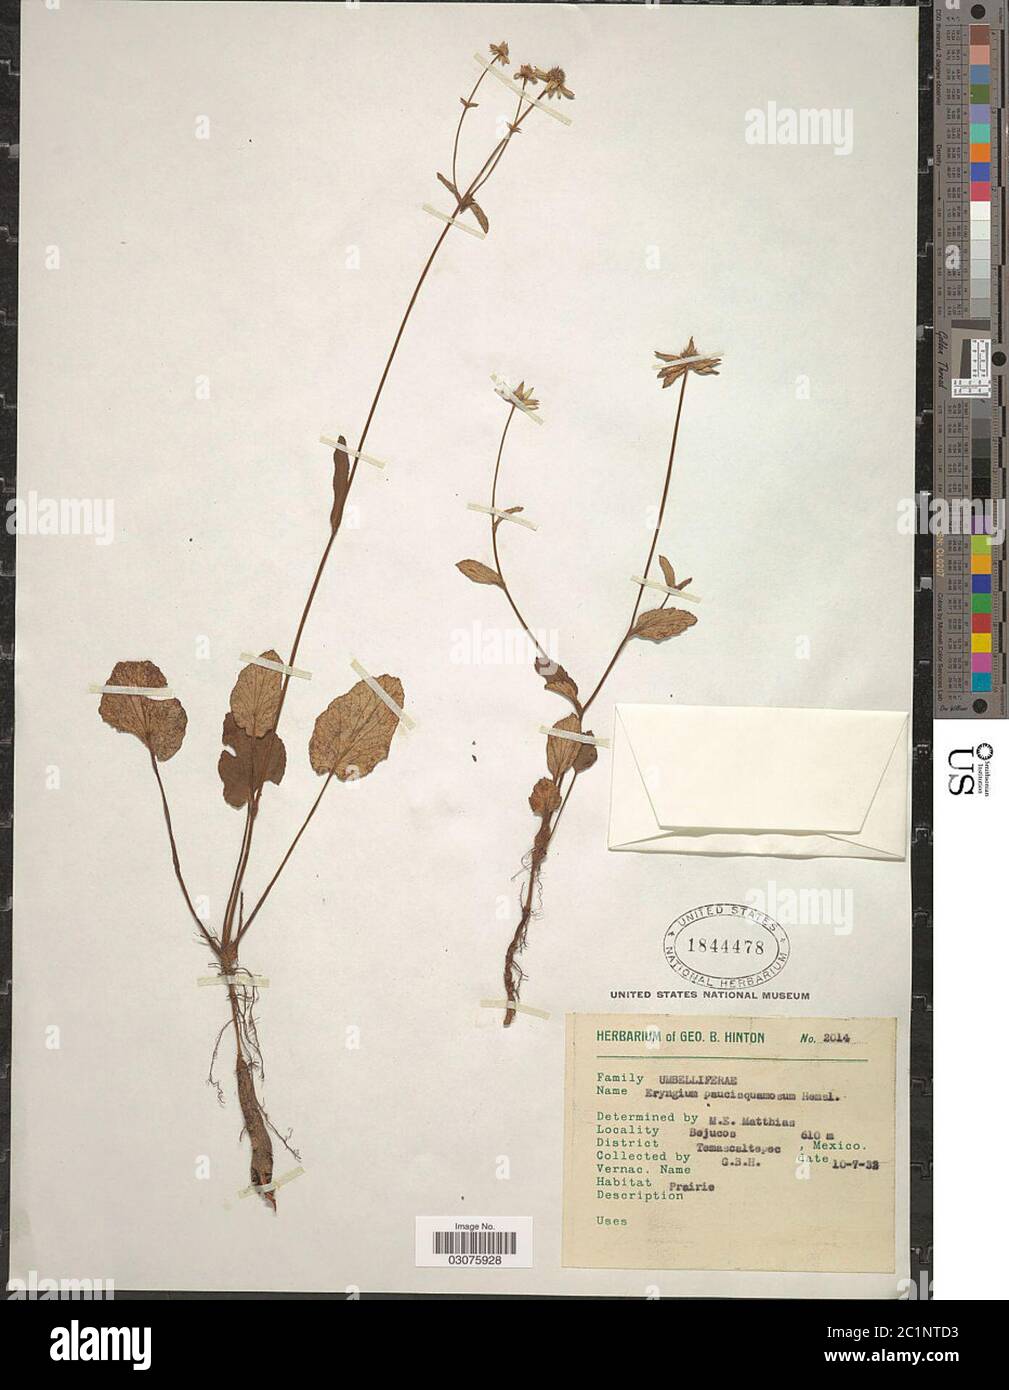 Eryngium paucisquamosum Hemsl in Hook f Eryngium paucisquamosum Hemsl in Hook f. Stock Photo